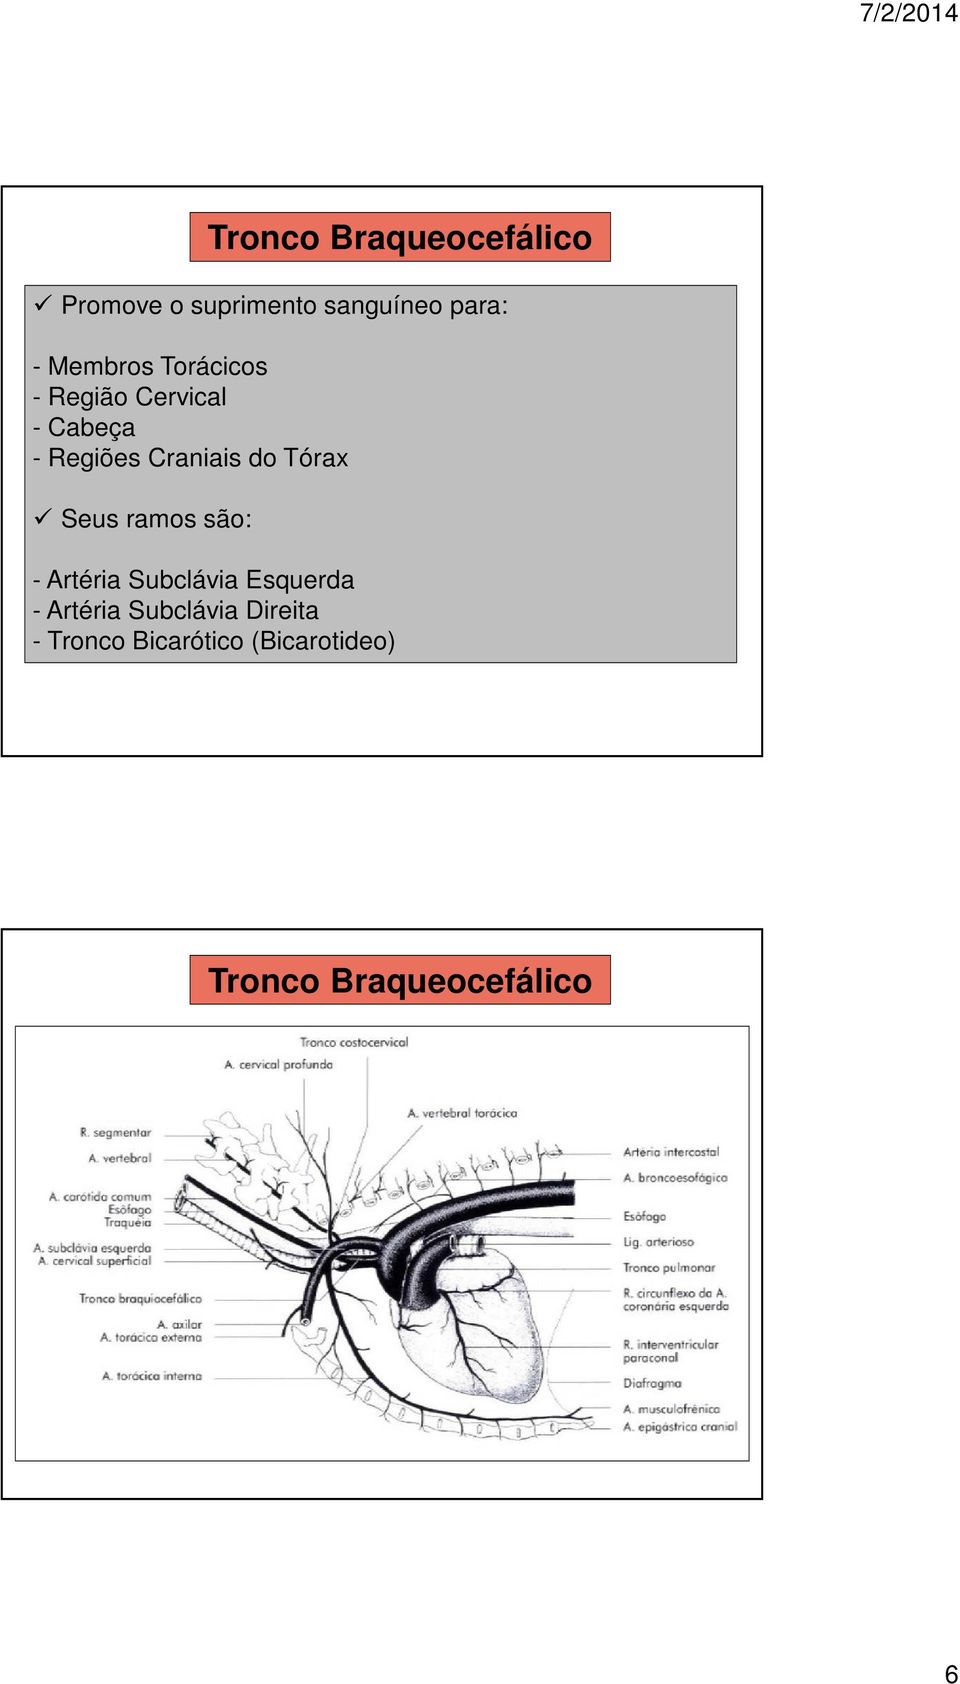 Tronco Braqueocefálico - Artéria Subclávia Esquerda - Artéria